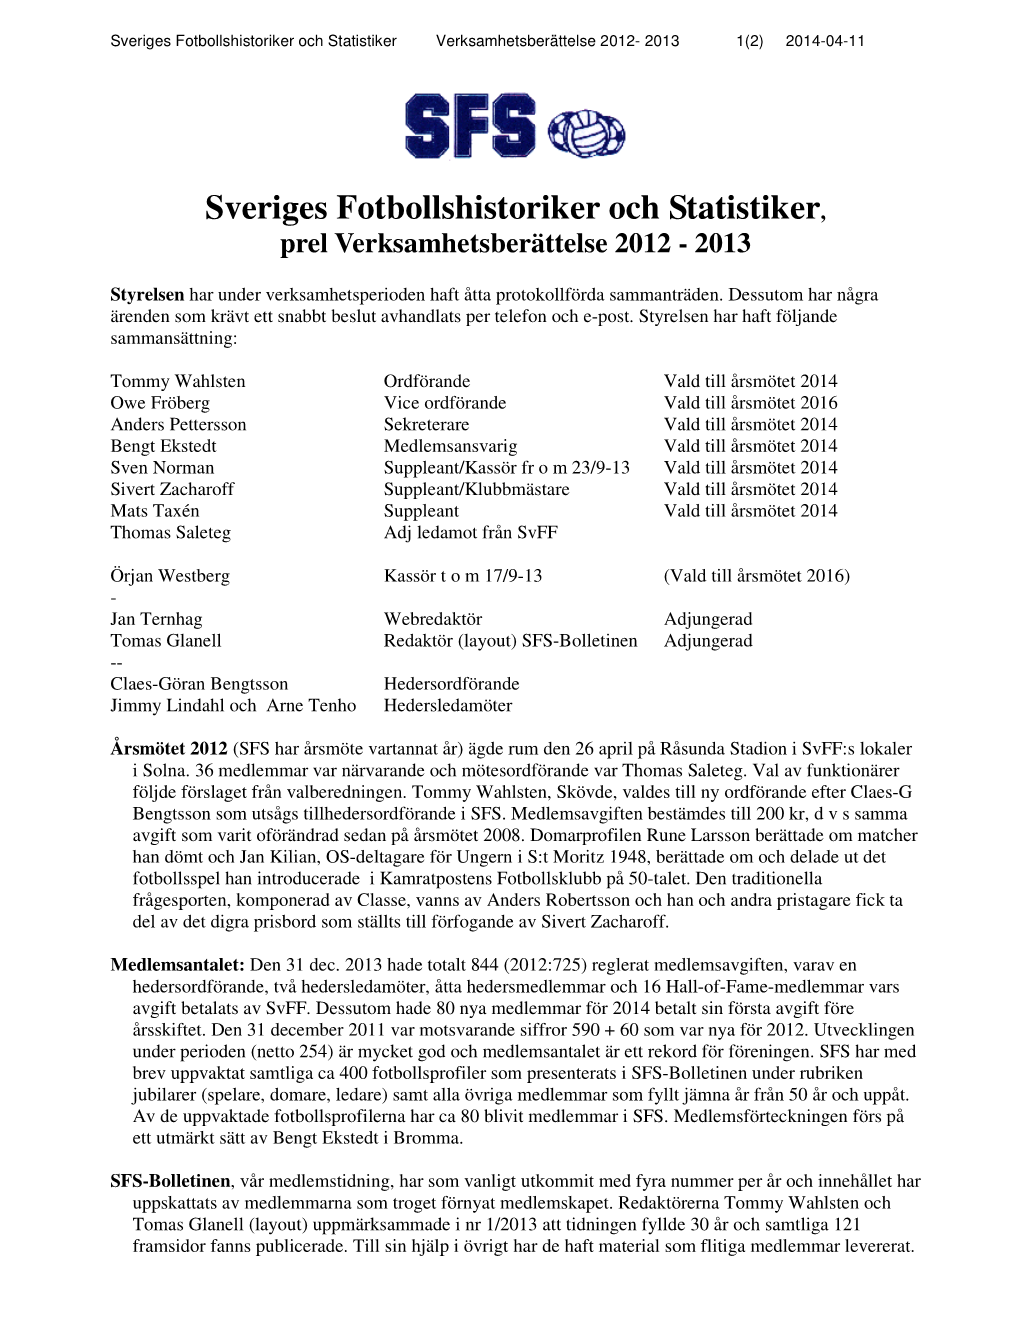 Sveriges Fotbollshistoriker Och Statistiker